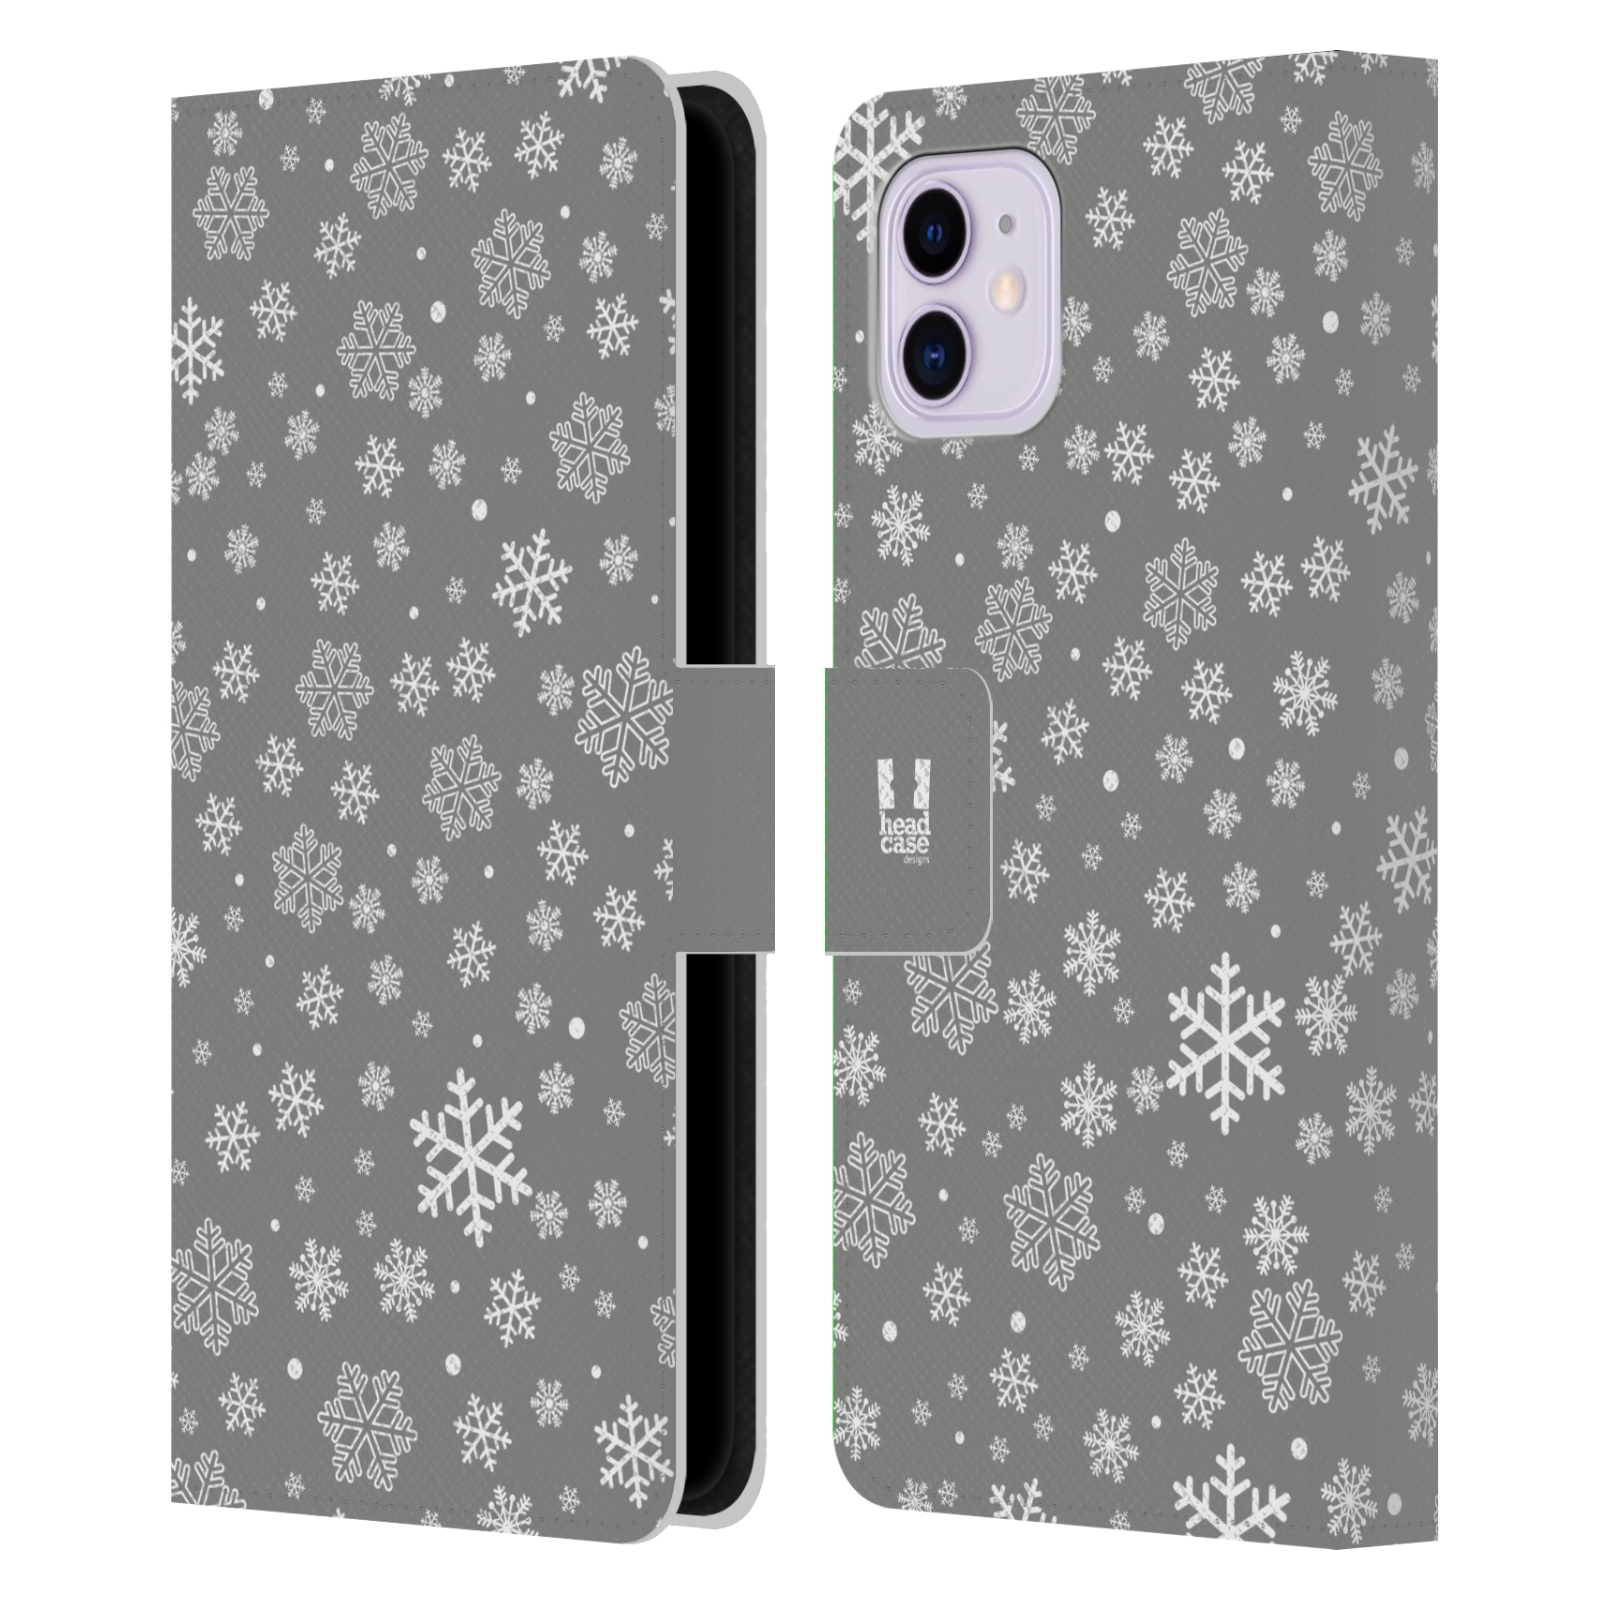 Pouzdro na mobil Apple Iphone 11 stříbrné vzory sněžná vločka